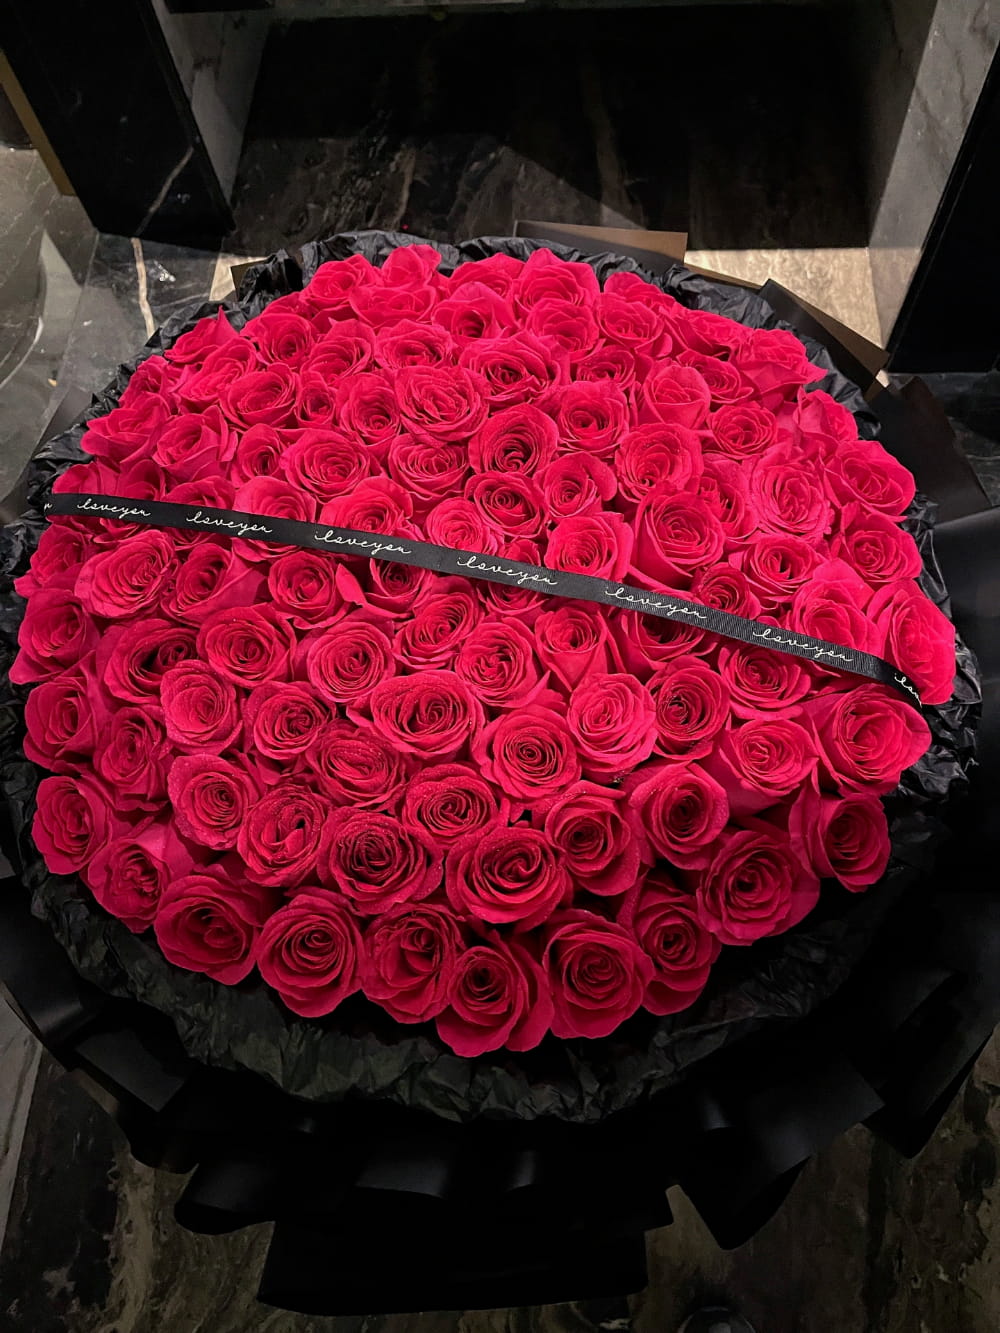 99朵玫瑰花图片,最美玫瑰花图片分享_1